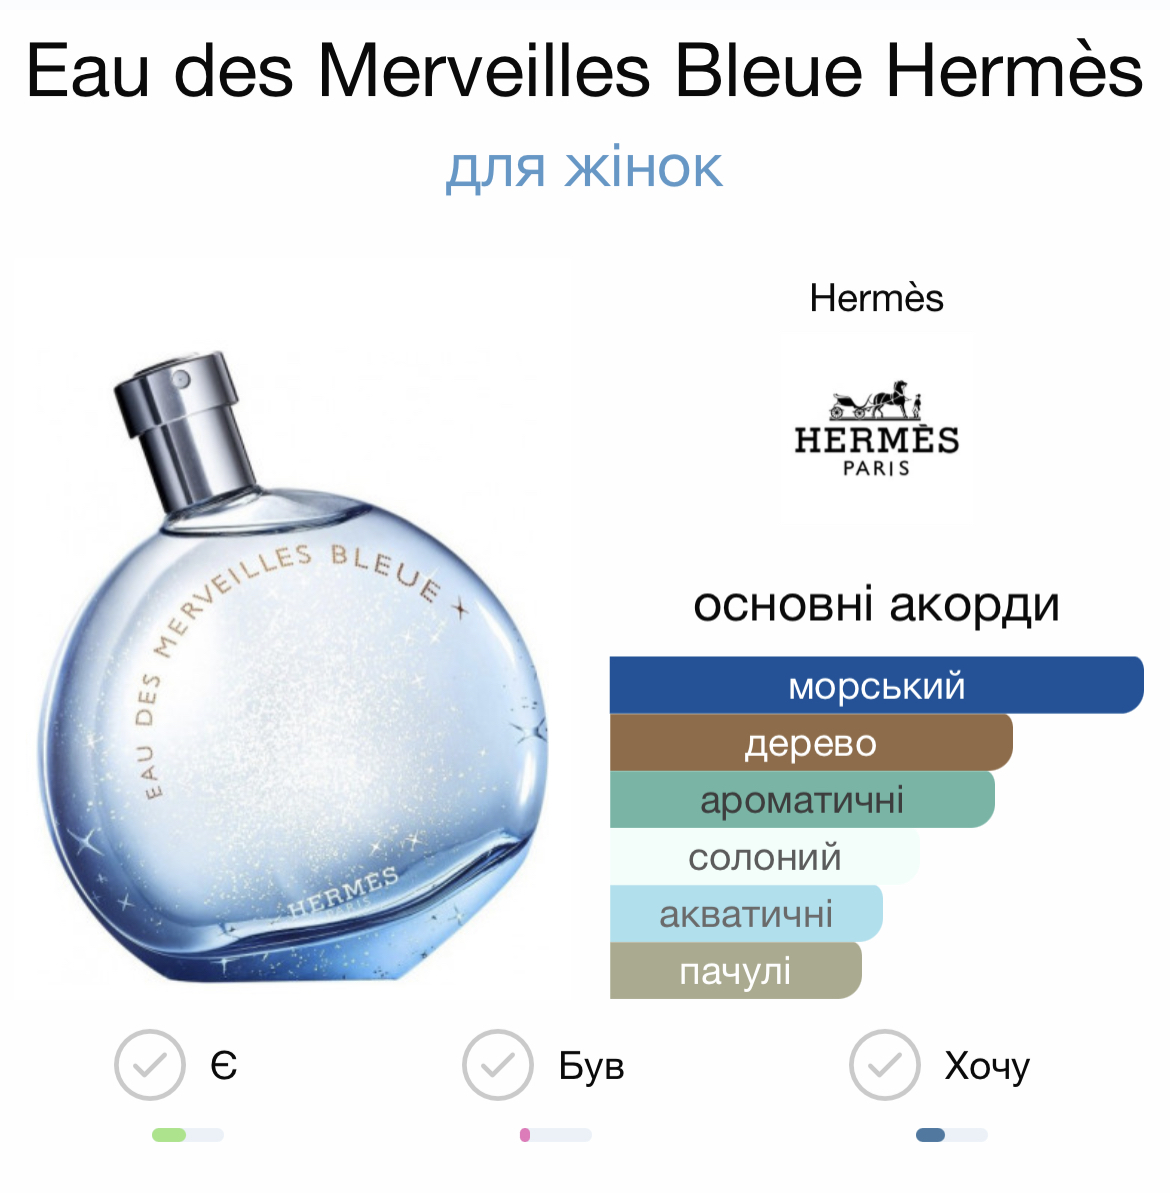 Hermes Eau des Merveilles Bleue